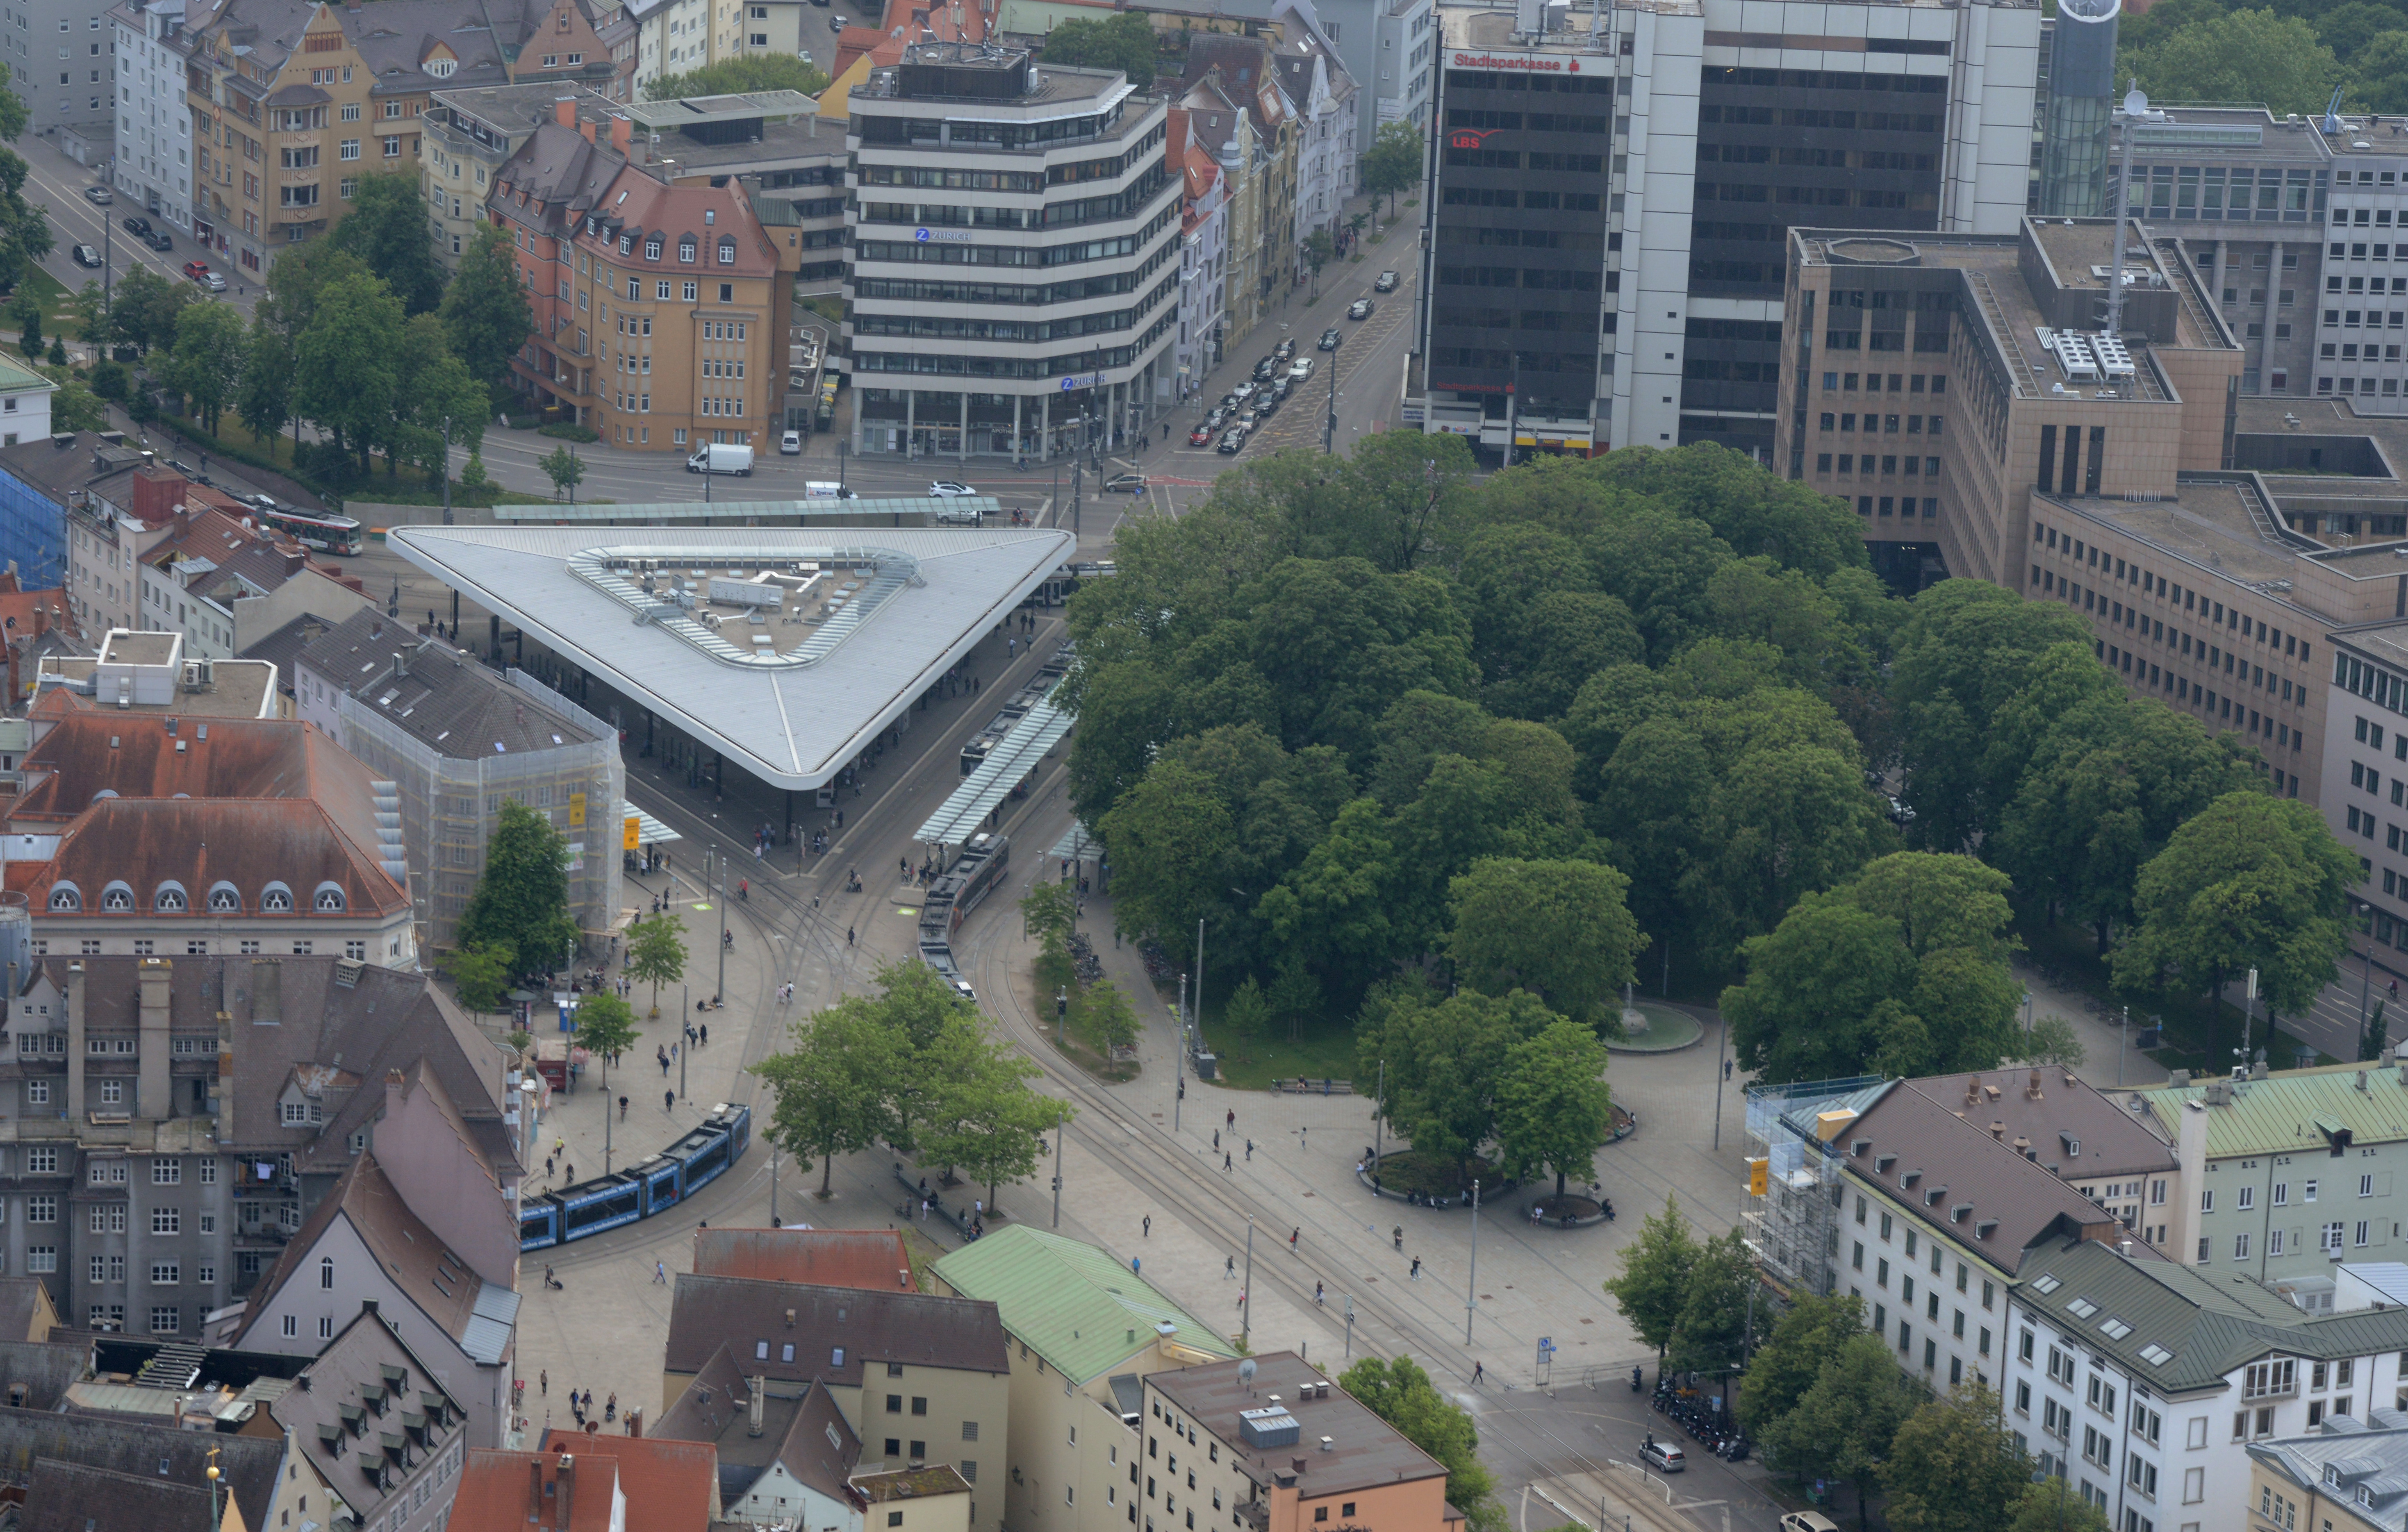 Das Luftbild zeigt den Königsplatz und die umliegenden Straßen von oben. Zu sehen sind mehrere Autos, Busse und Straßenbahnen, aber auch zahlreiche Fußgänger.